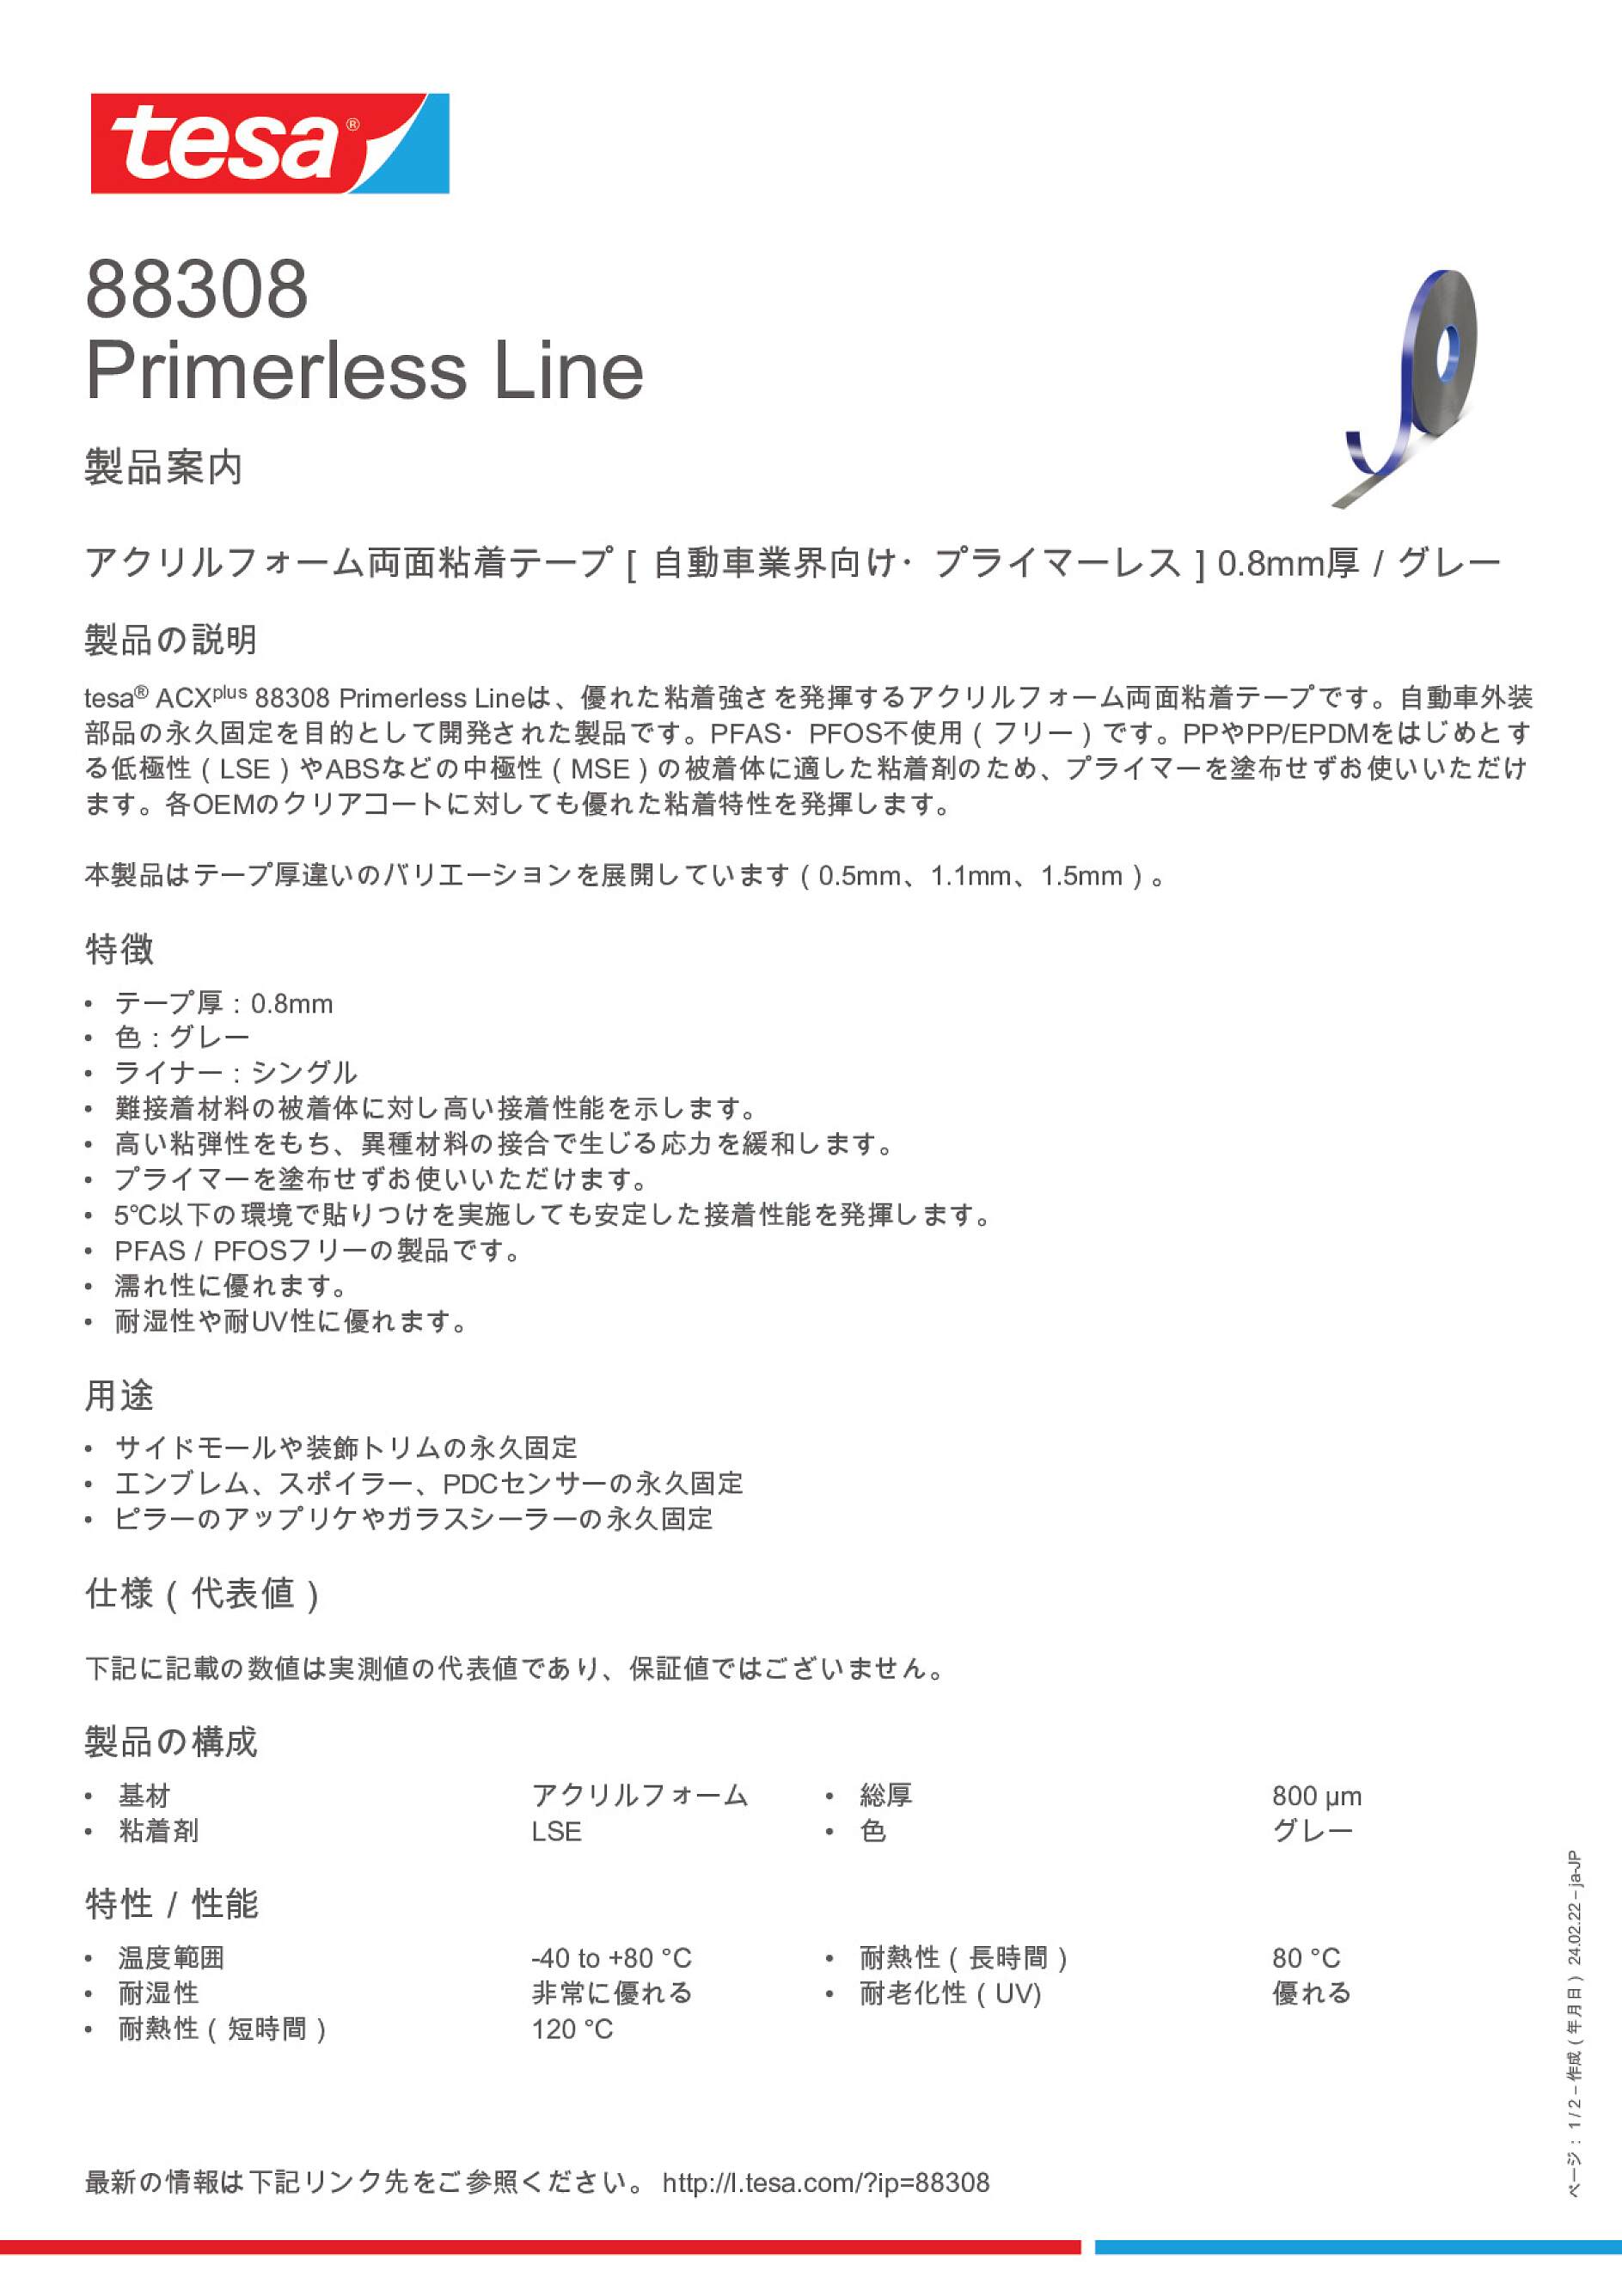 88308 Primerless Line - tesa